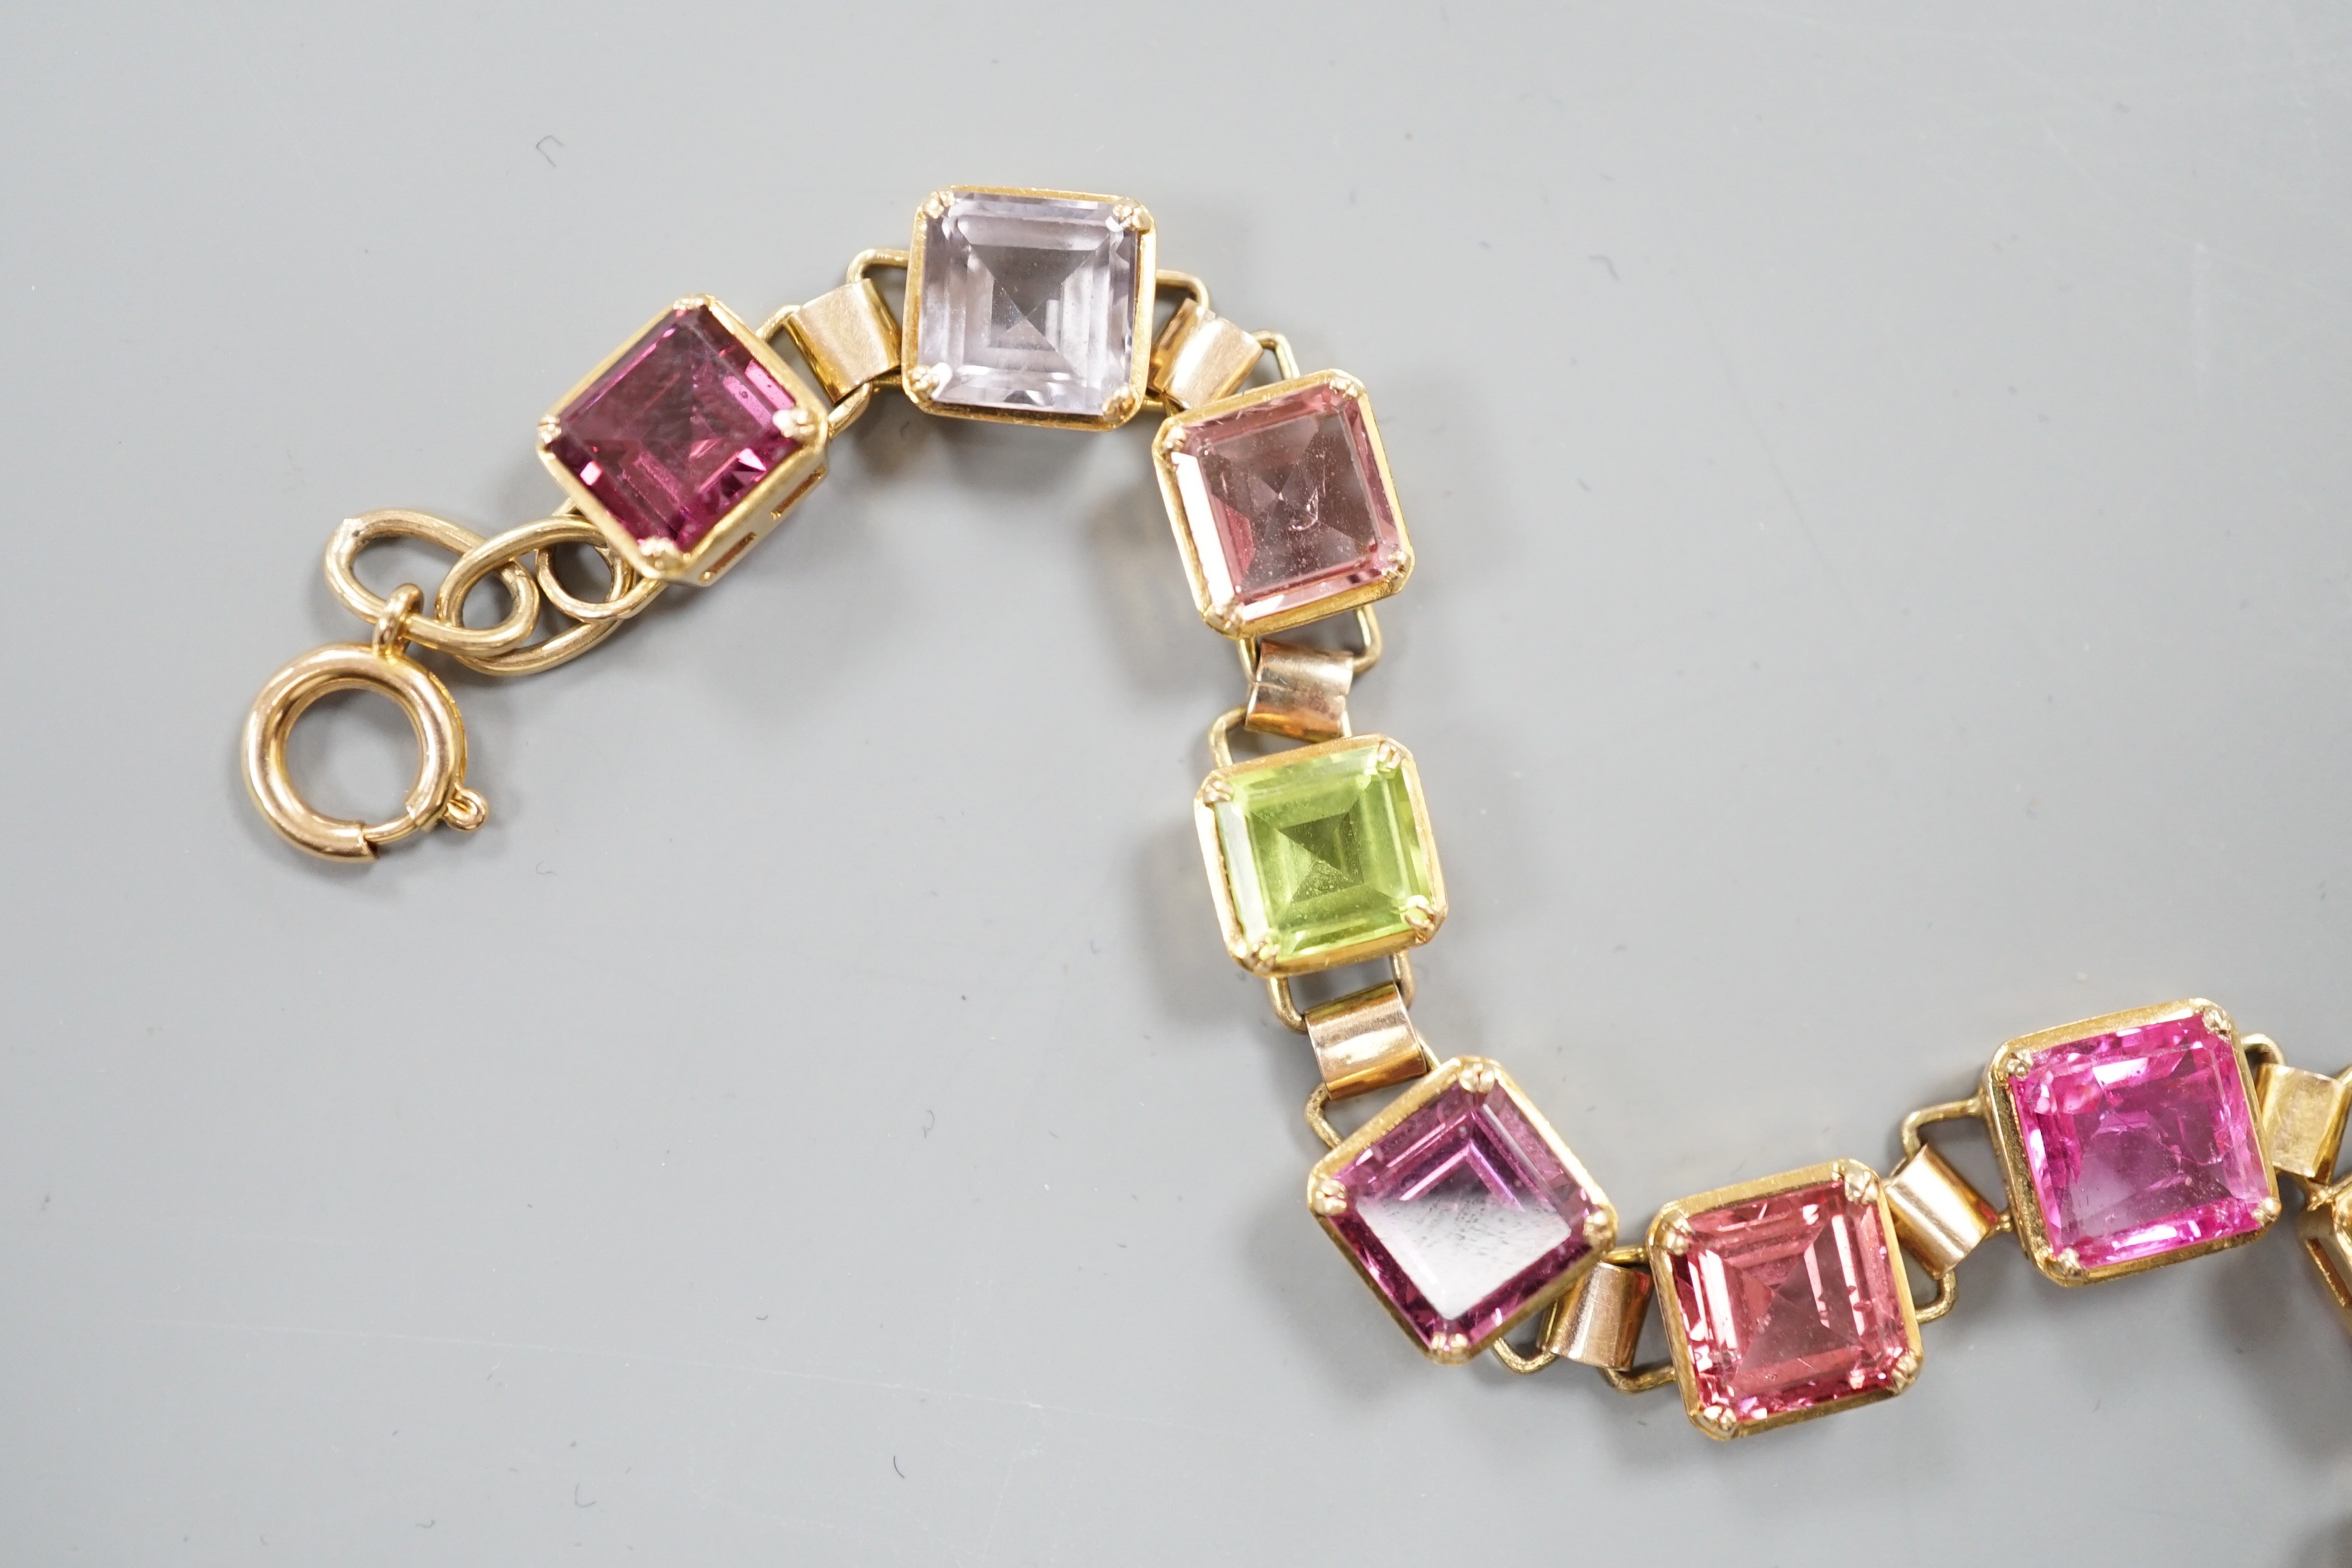 A modern 9k yellow metal and multi gem set bracelet, overall 24cm, gross weight 19.5 grams